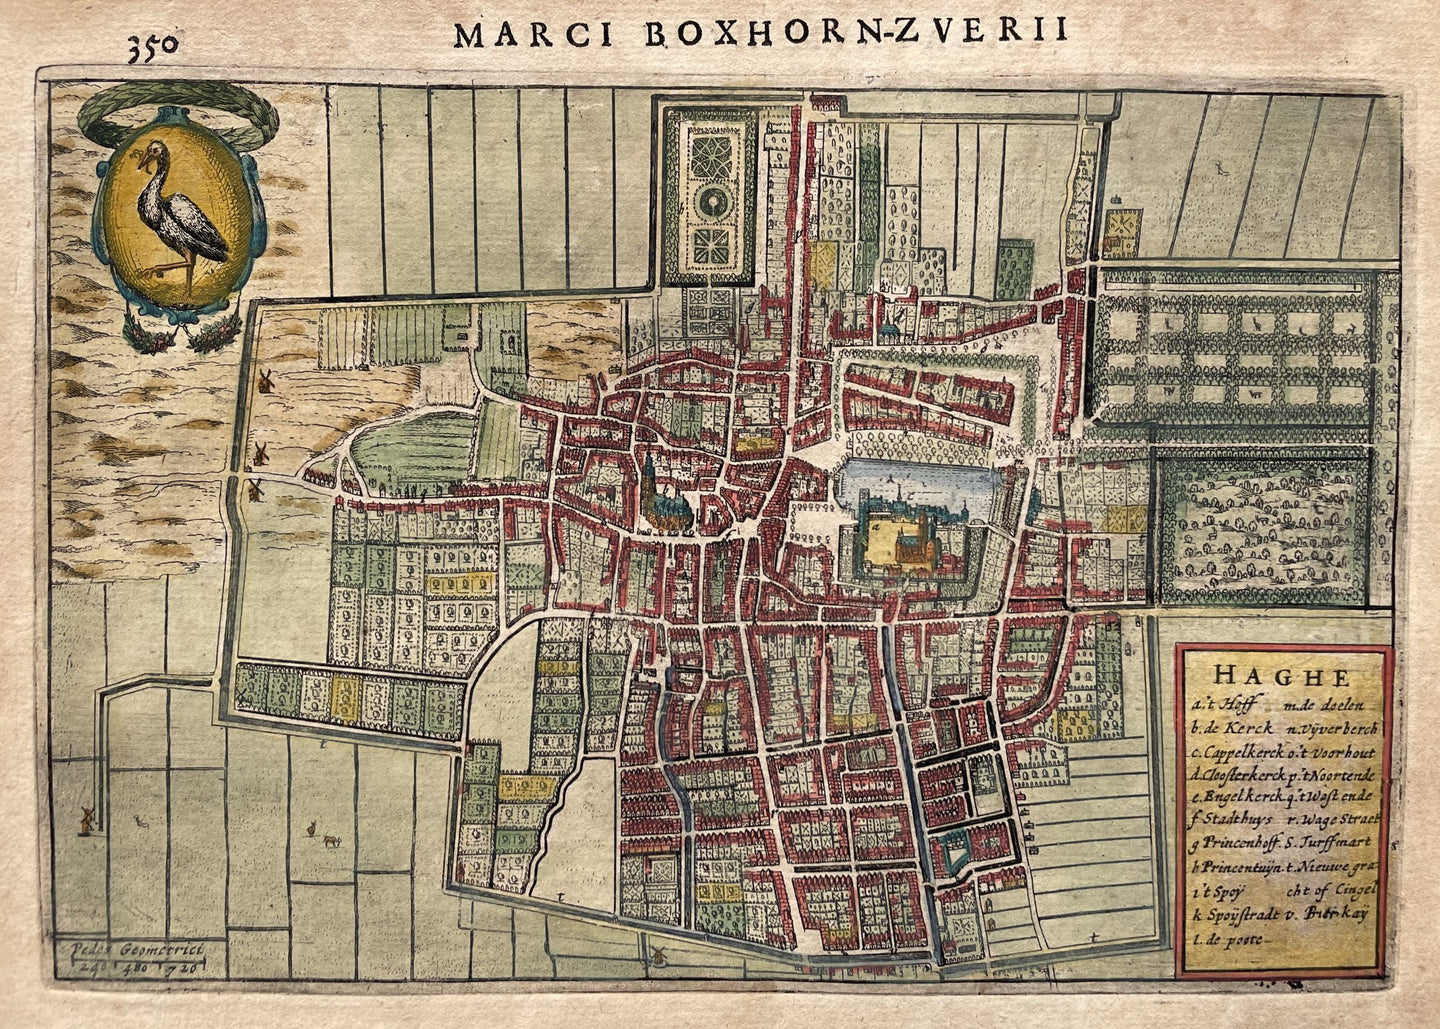 Den Haag Stadsplattegrond van 's-Gravenhage in vogelvluchtperspectief - M Boxhorn - 1632